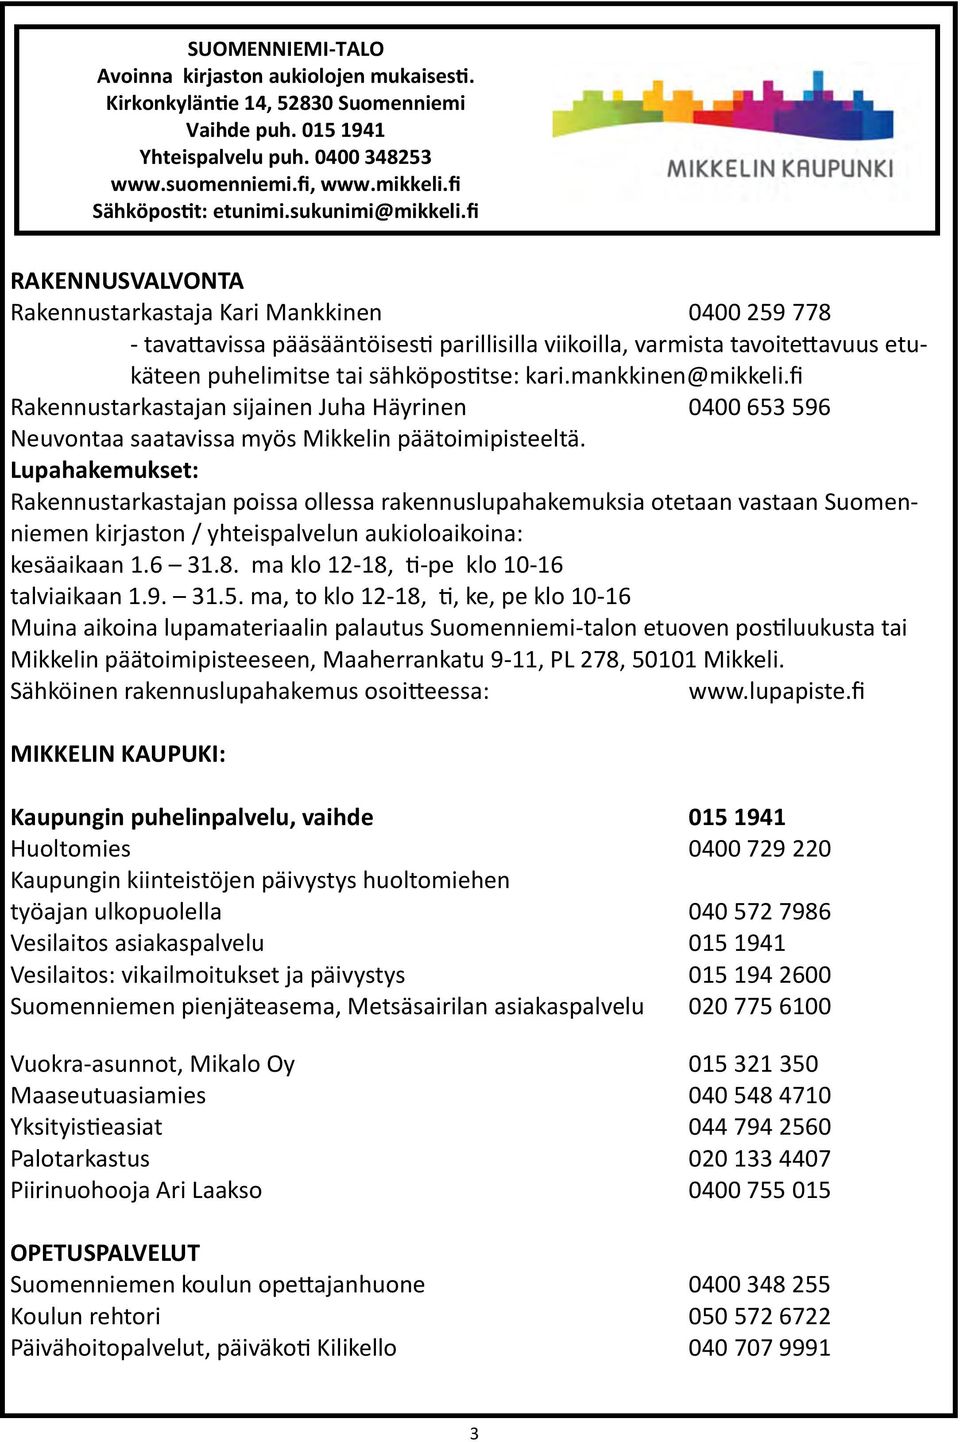 fi RAKENNUSVALVONTA Rakennustarkastaja Kari Mankkinen 0400 259 778 - tavattavissa pääsääntöisesti parillisilla viikoilla, varmista tavoitettavuus etukäteen puhelimitse tai sähköpostitse: kari.